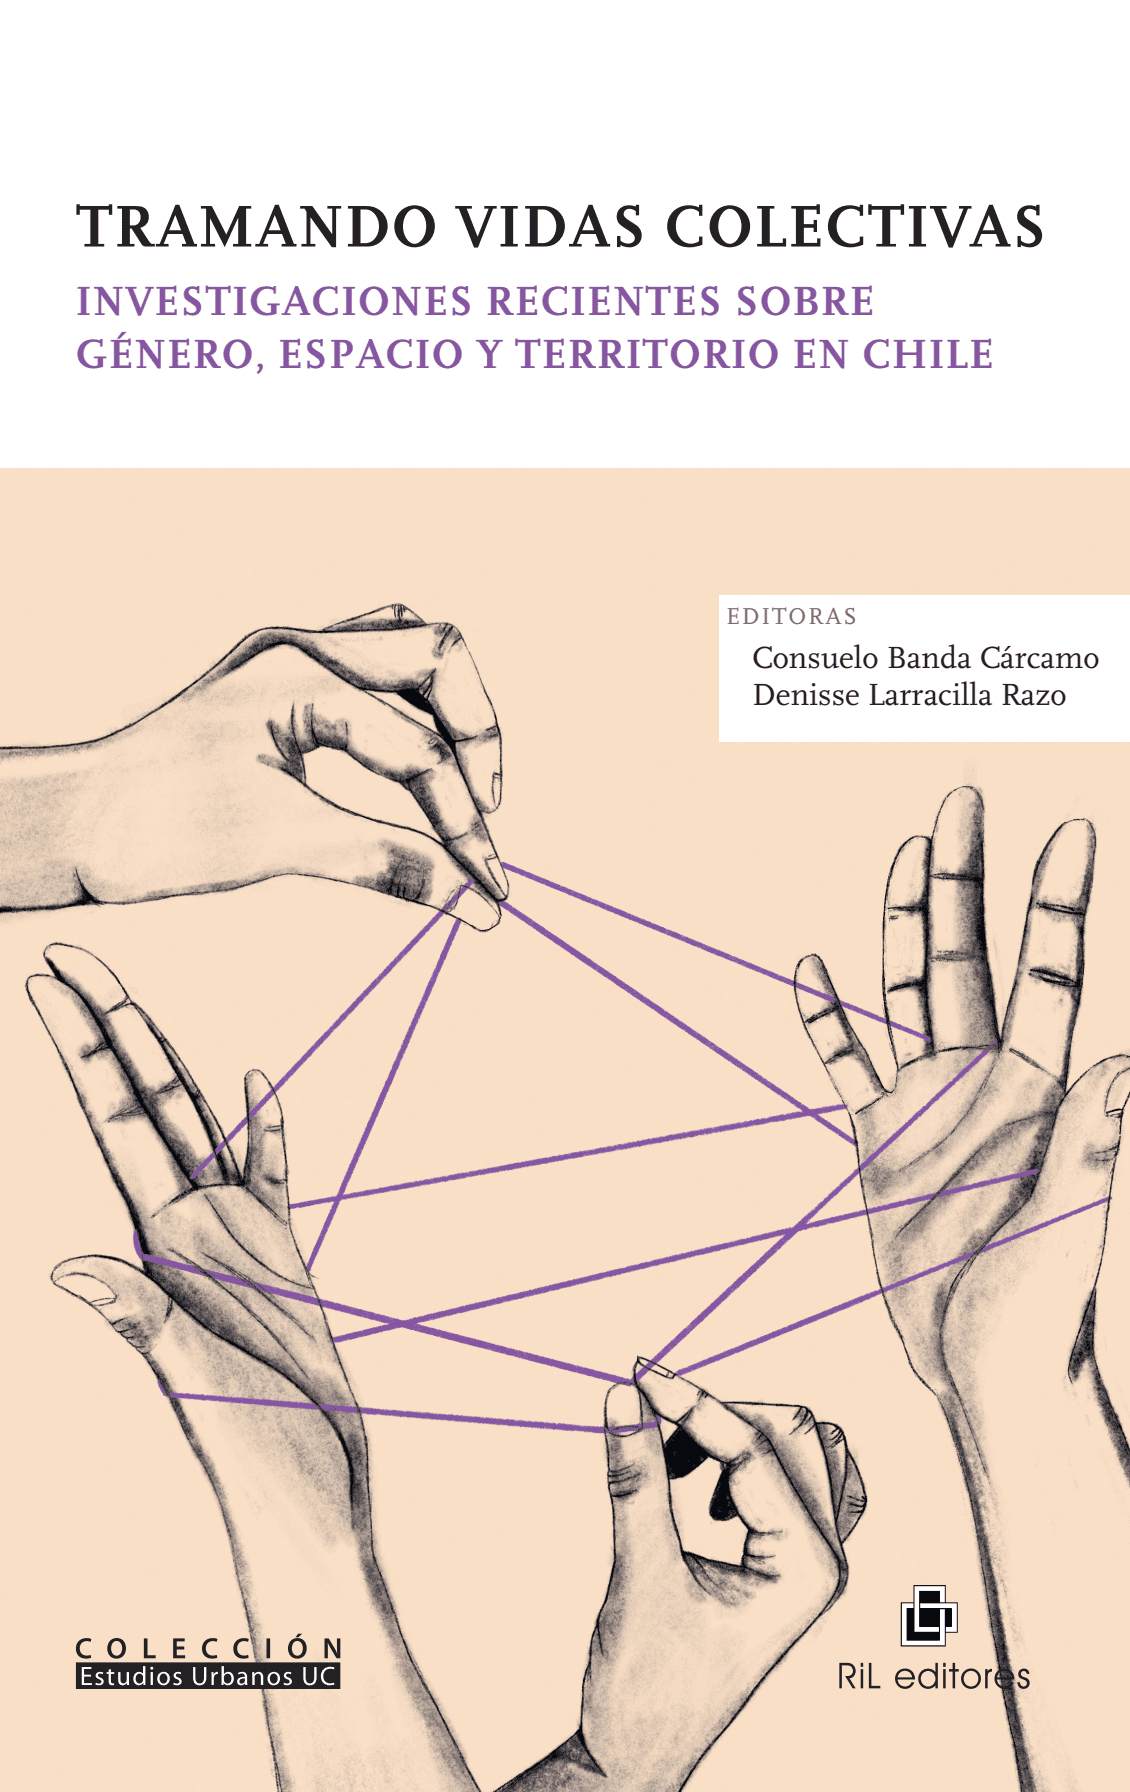 Tramando vidas colectivas: investigaciones recientes sobre género, espacio y territorio en Chile